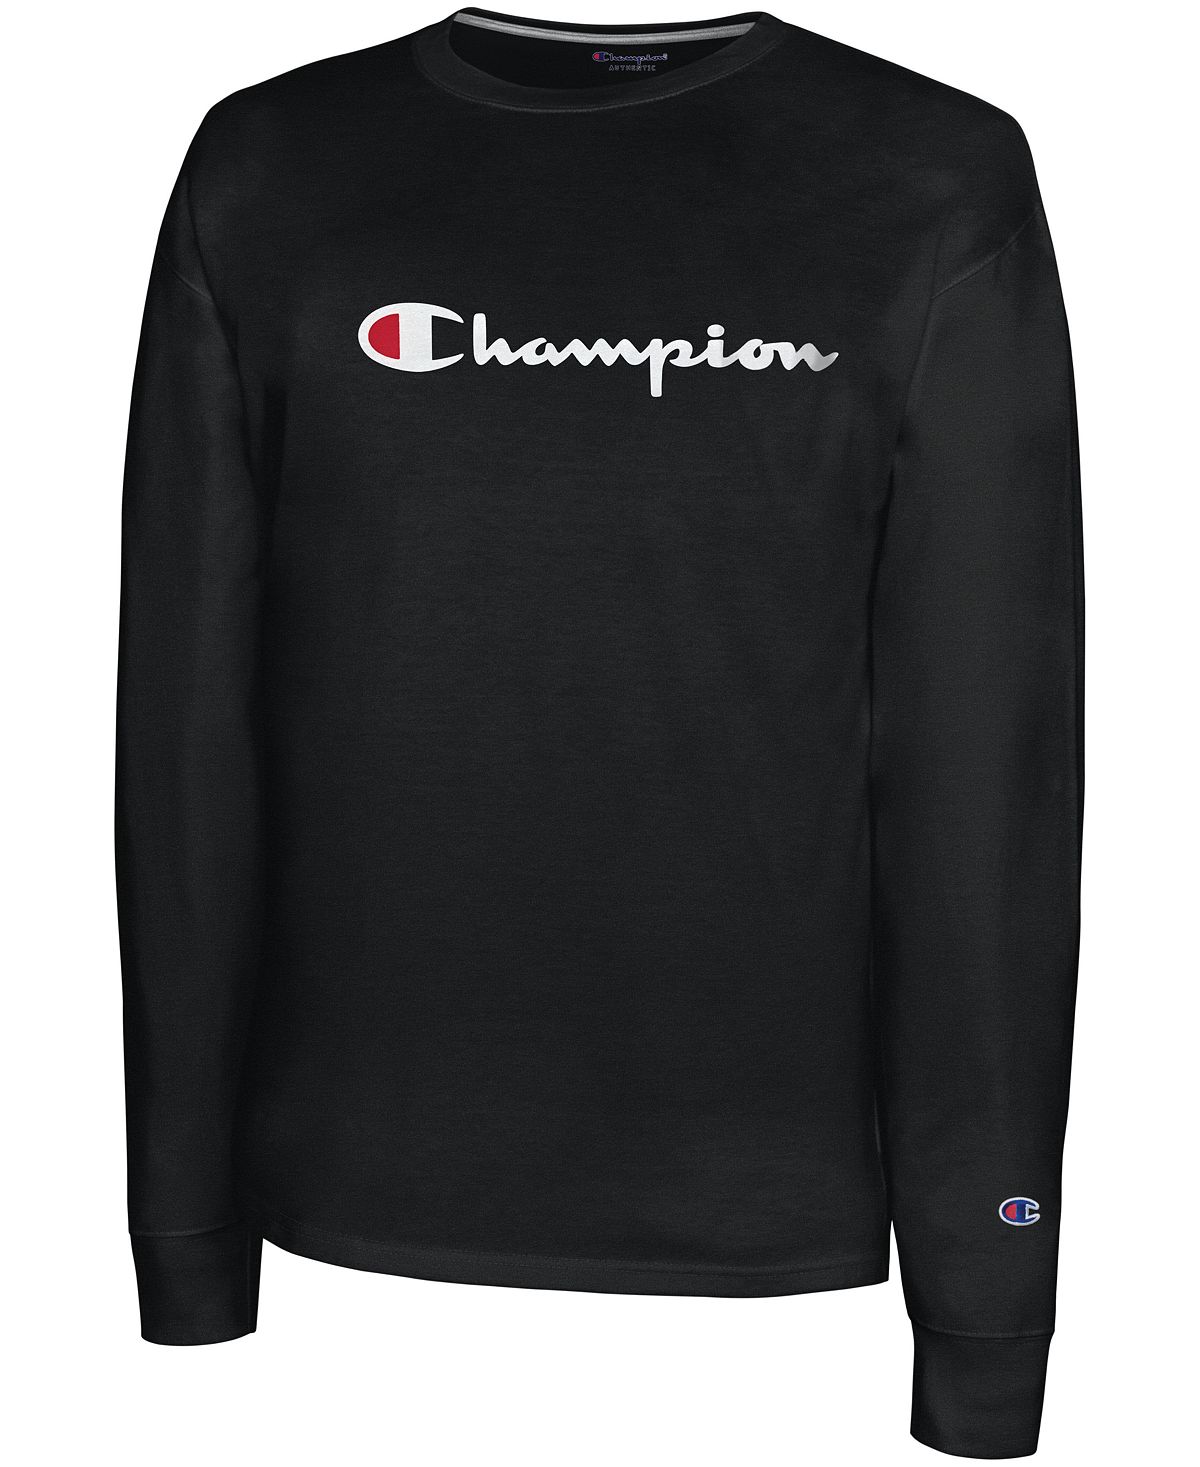 цена Мужская футболка с длинным рукавом и логотипом Champion, черный